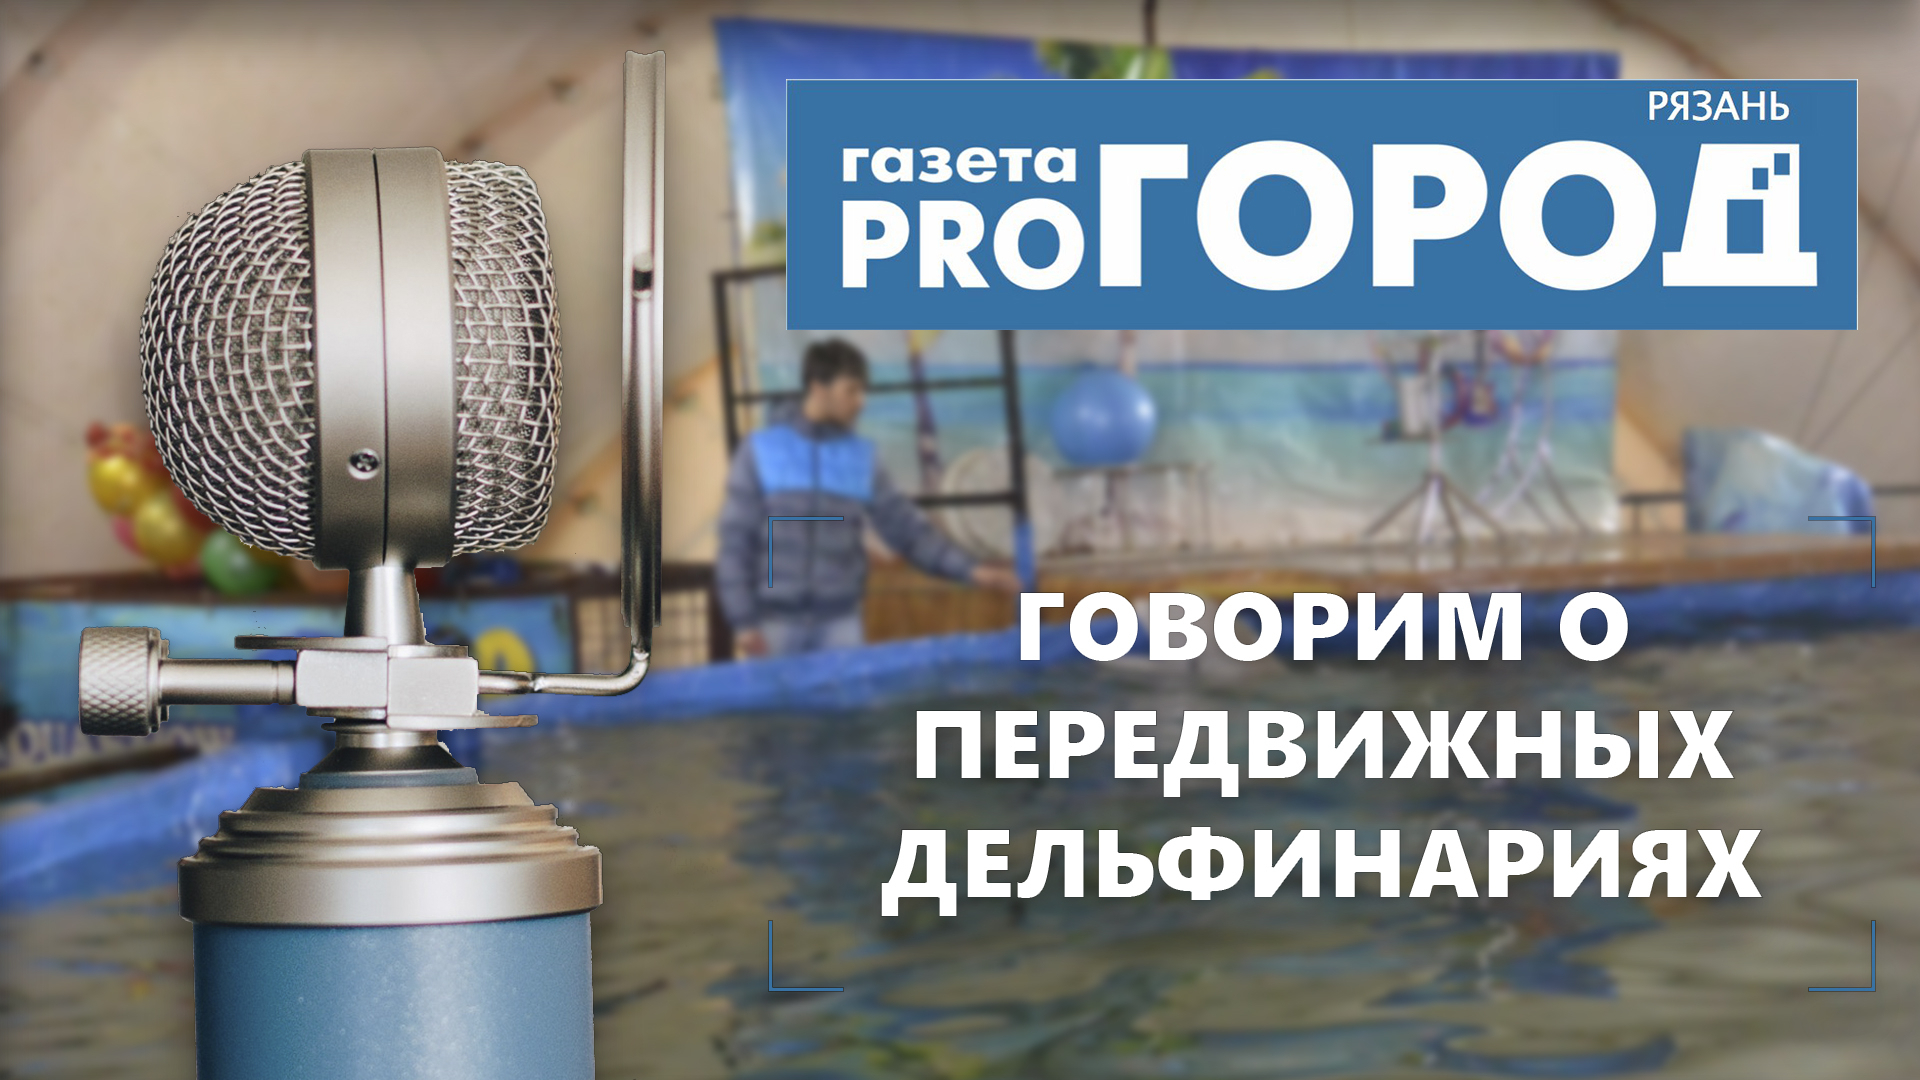 Подкаст от Pro Город Рязань №2 - Говорим о передвижных дельфинариях